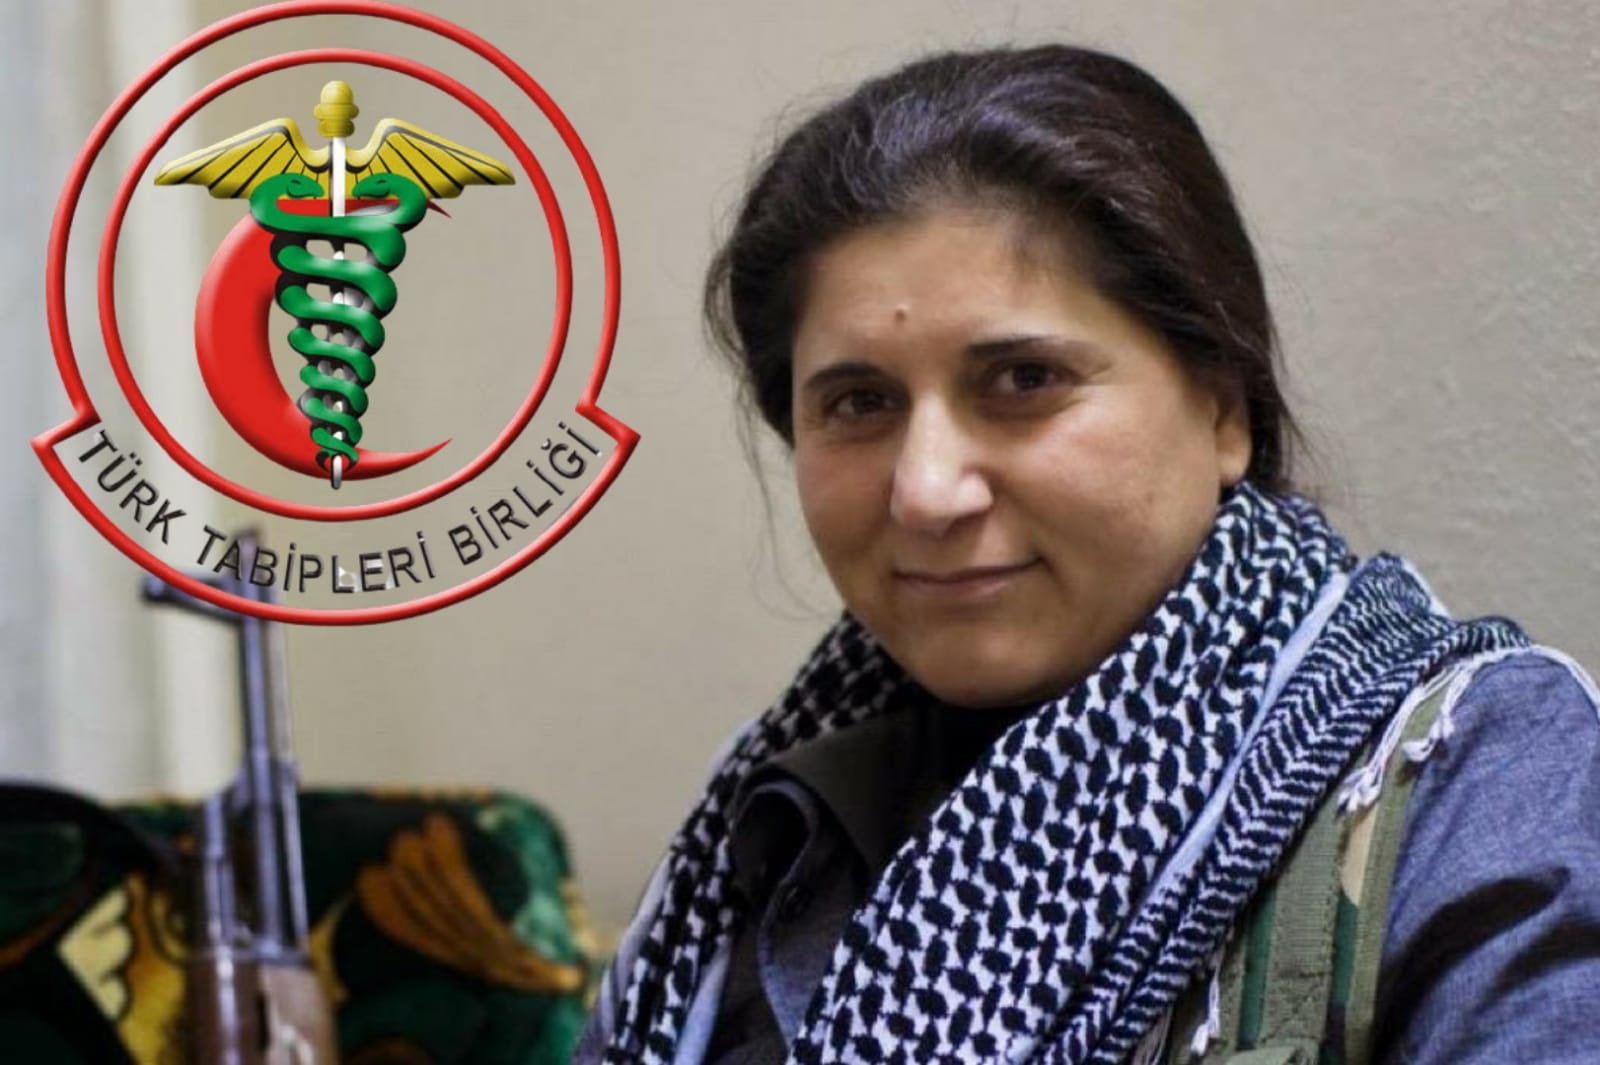 Tabipler Birliği'nden PKK'ya barış ödülü